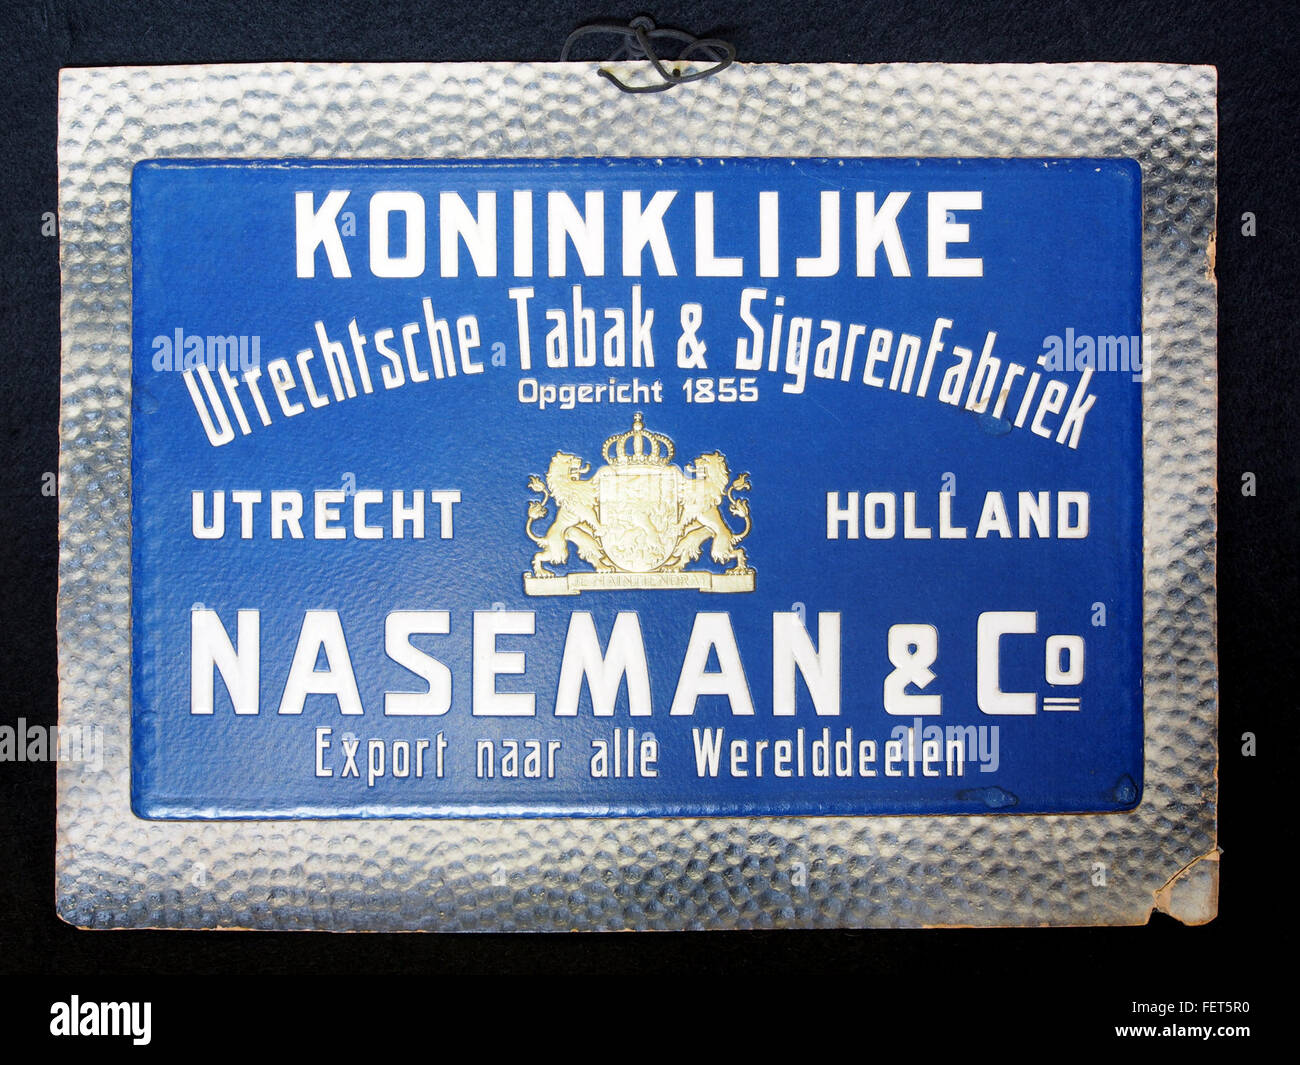 Koninklijke Utrechtsche Tabak & Sgarenfabriek Naseman & Co kartonnen reklame bord Foto Stock